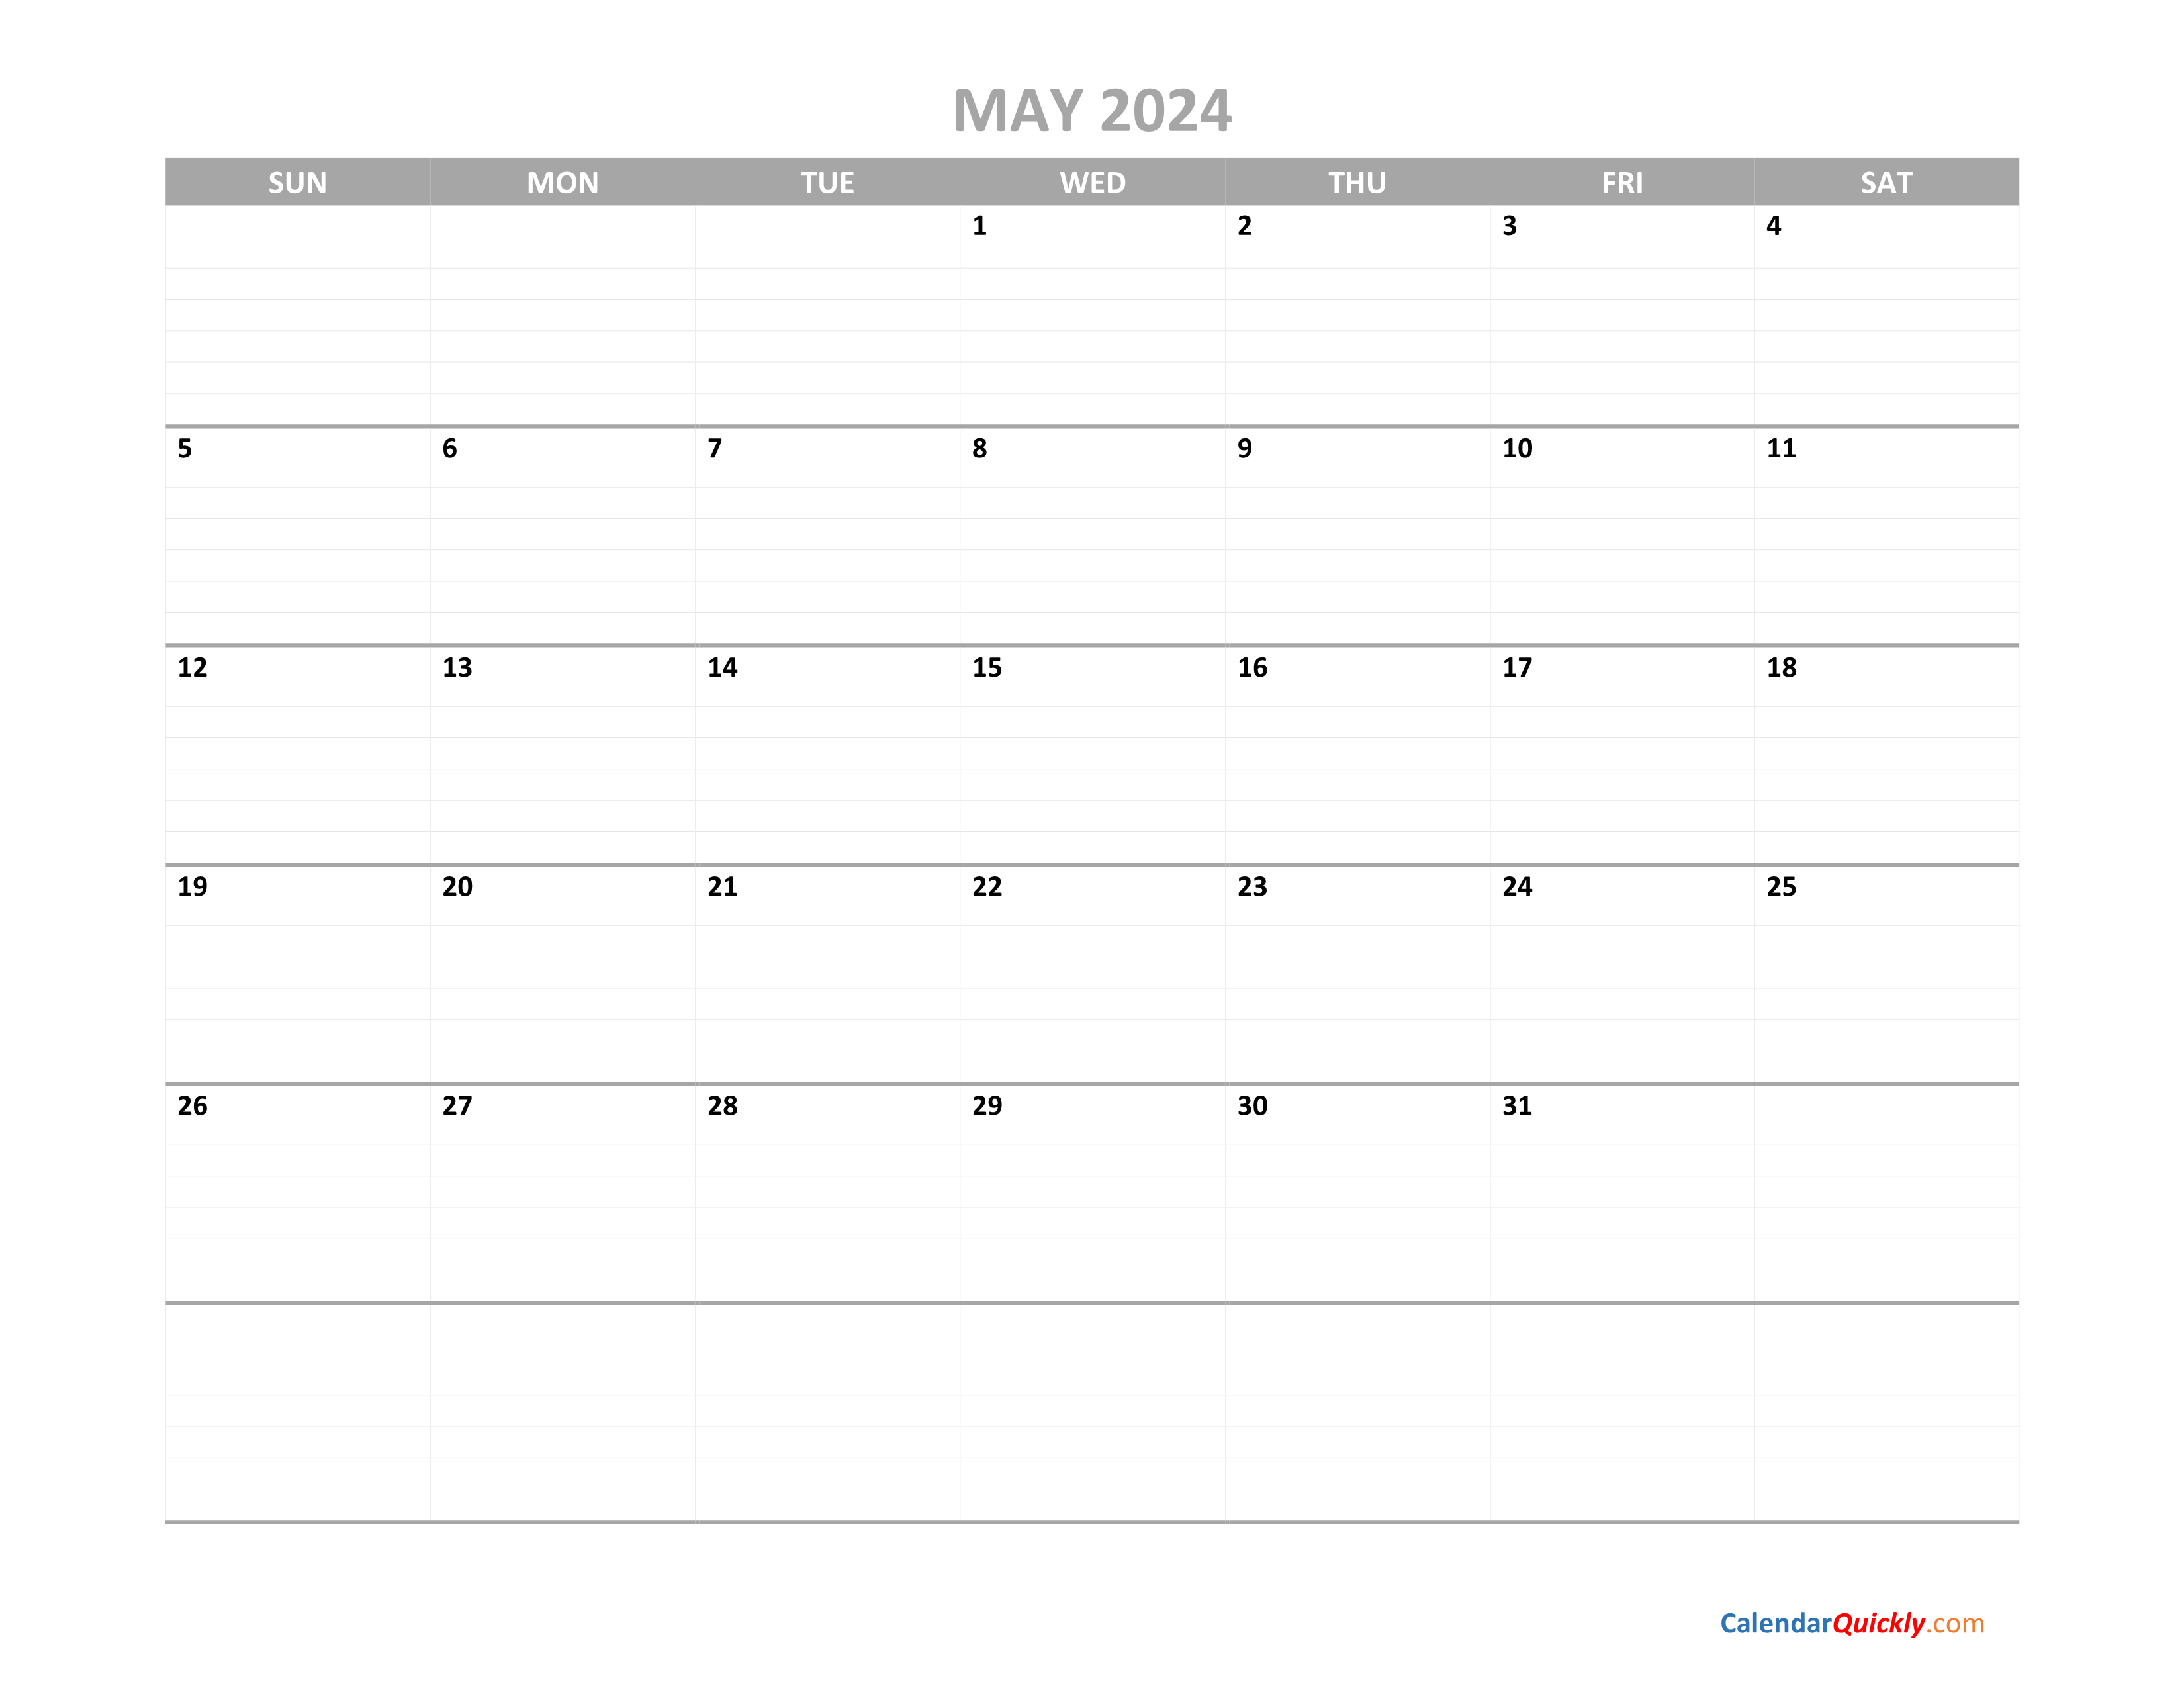 May Calendar 2024 Printable | Calendar Quickly